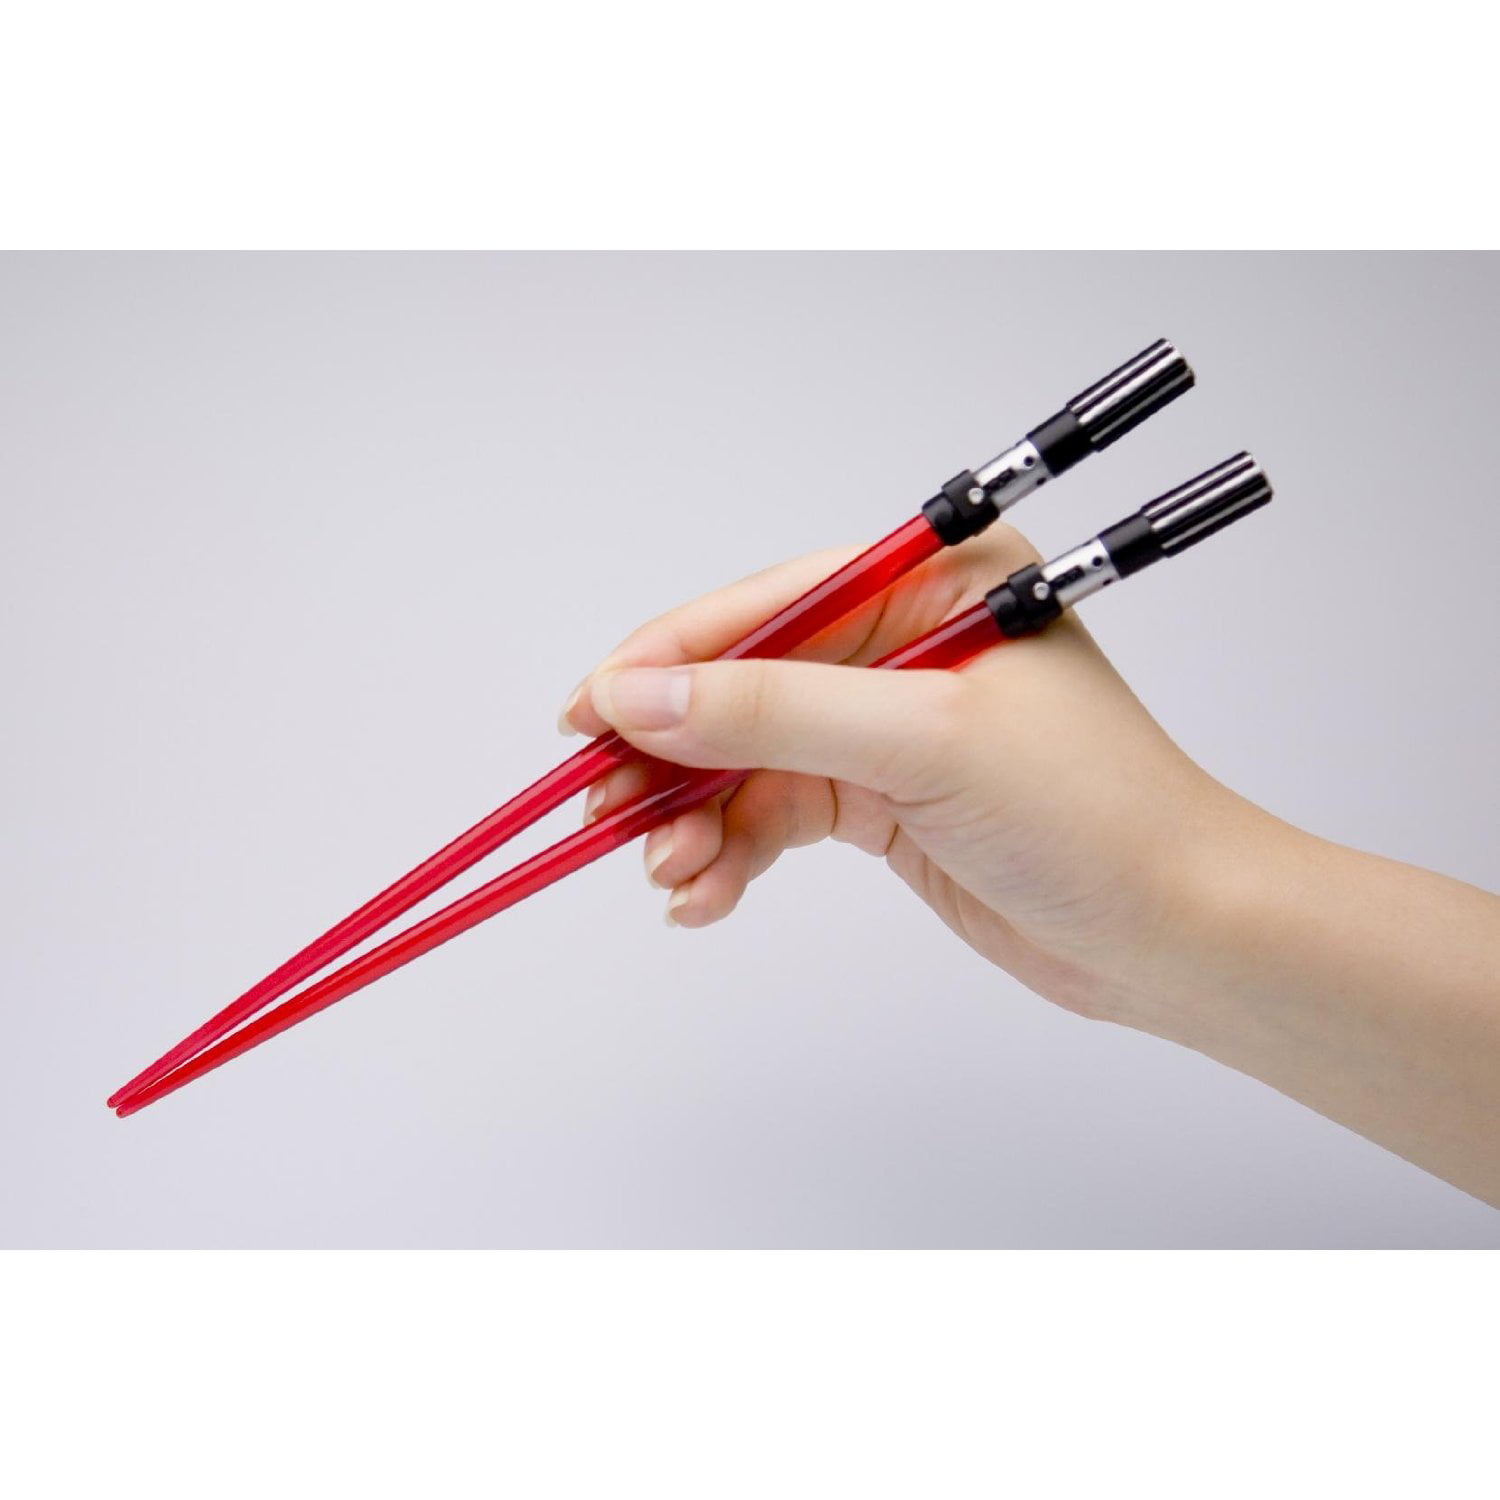 Star Wars Darth Vader Lightsaber Chopsticks Walmart.com